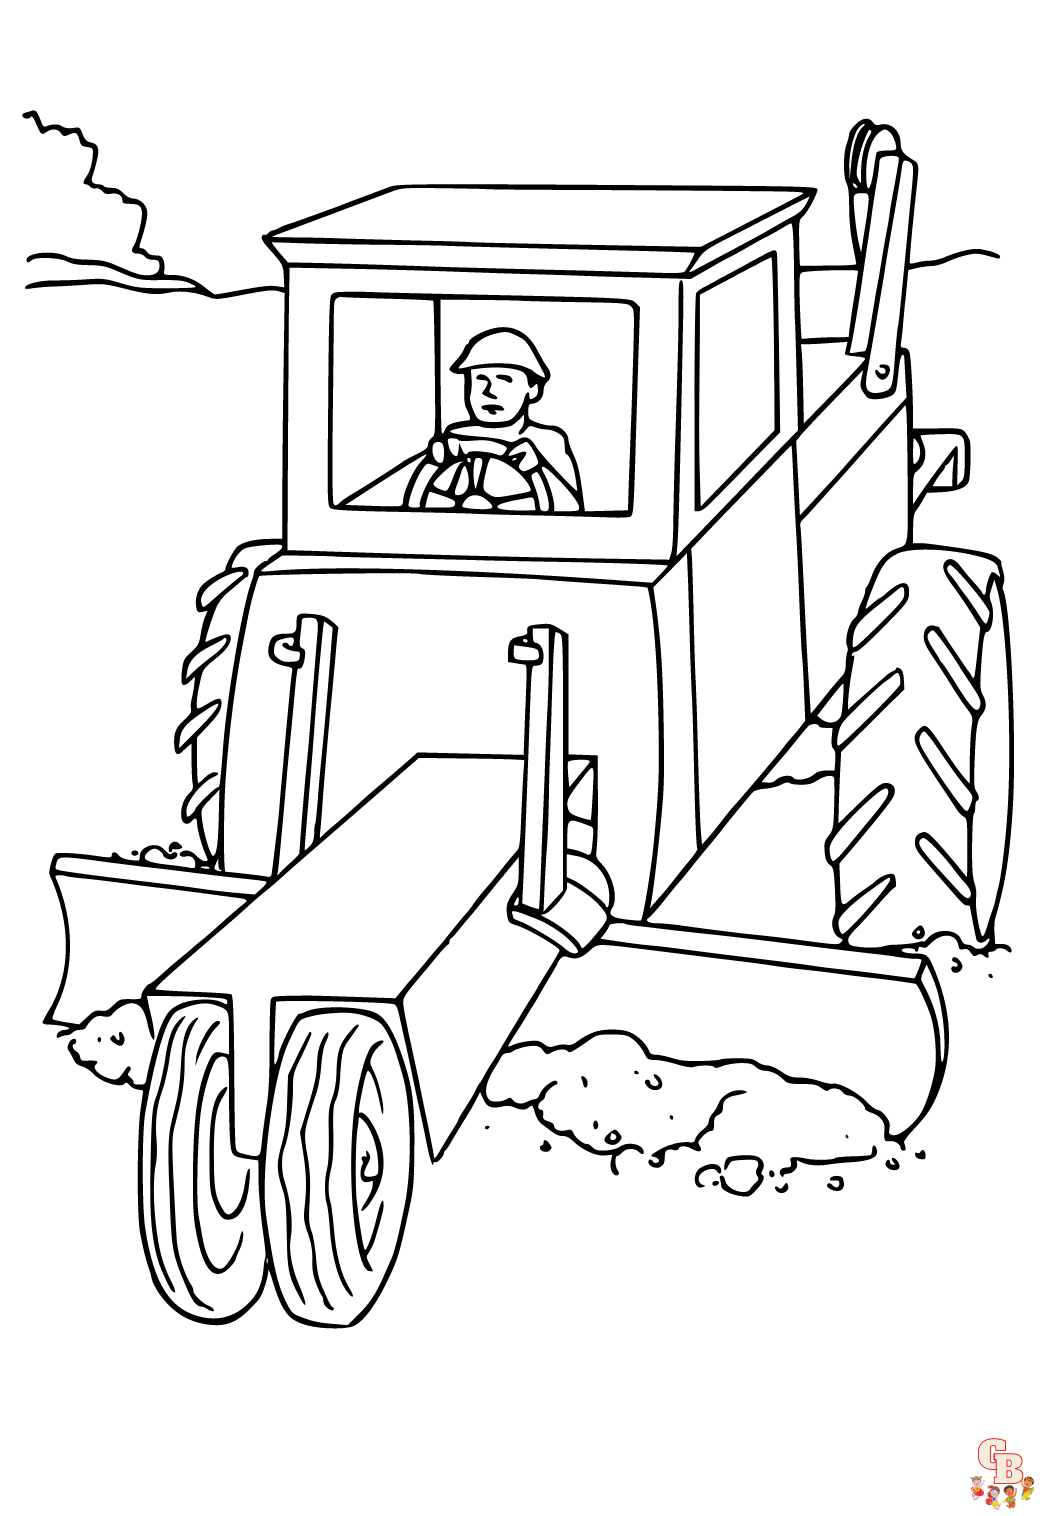 Gratis Kleurplaat Tractor Voor Kinderen - Leuke Kleurplaten van Tractoren om te Printen